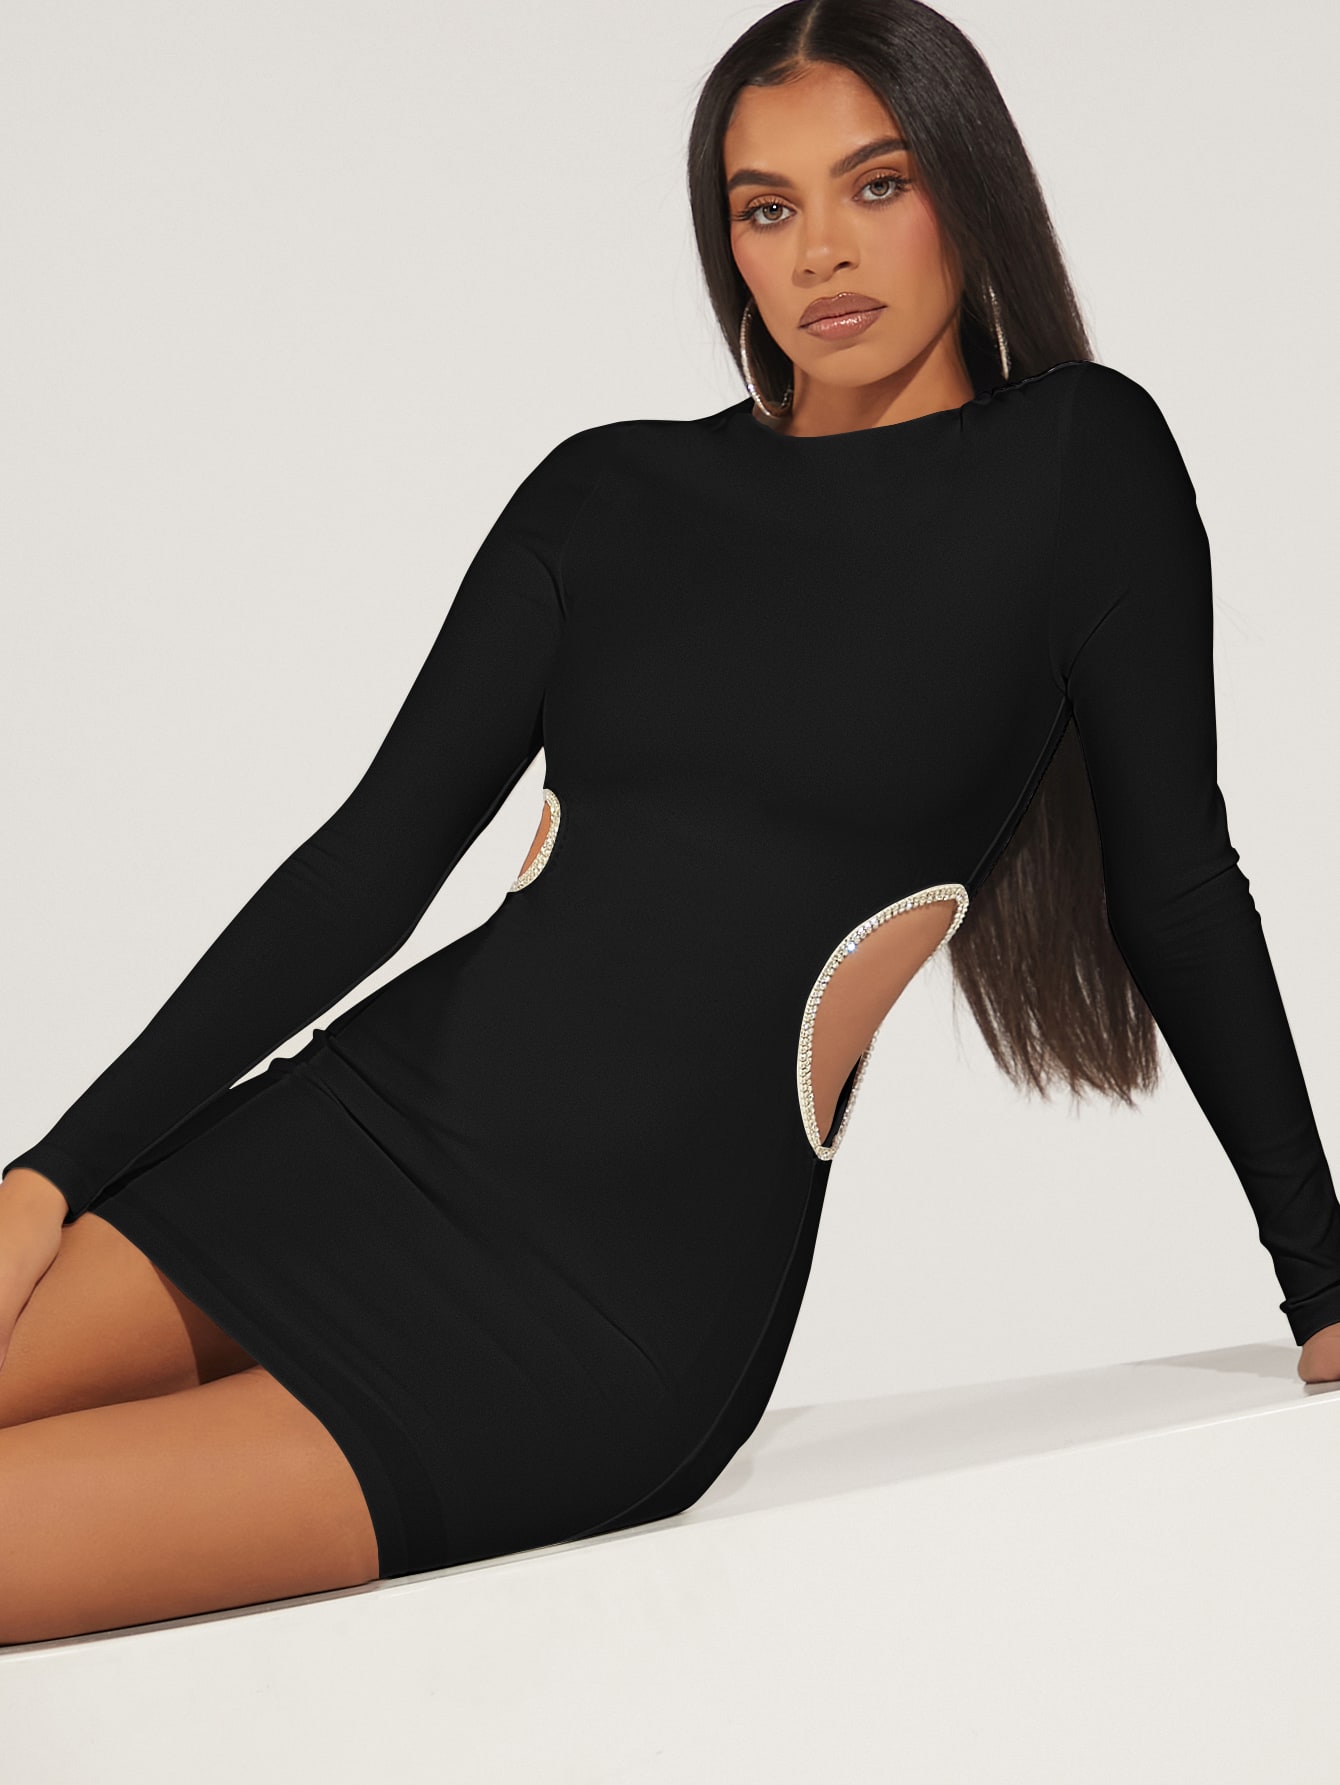 Bodycon Dresses | Short & Tight Dresses for Women